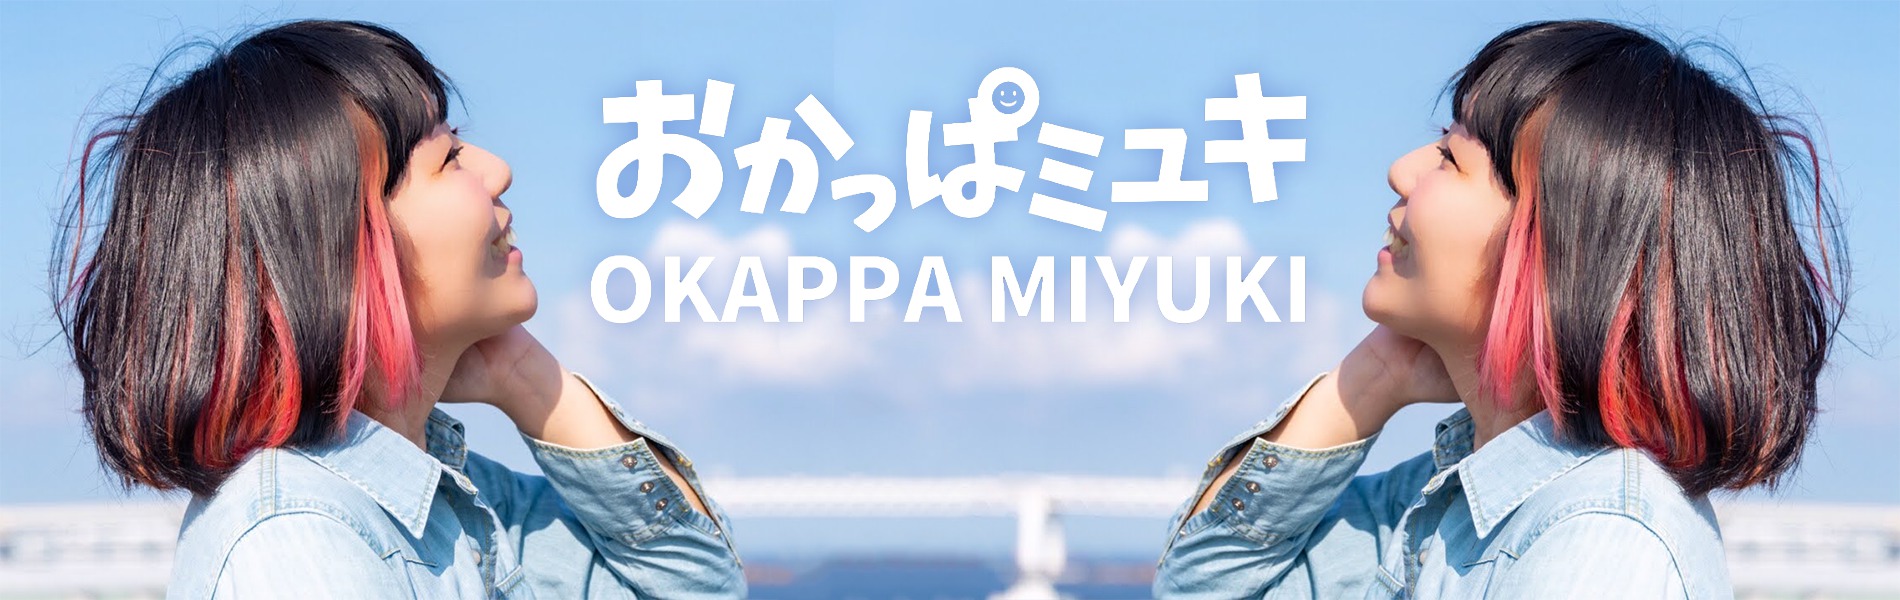 おかっぱミユキの公式サイトのトップ画像。横浜桜木町みなとみらい山下公園大さん橋で風に吹かれているおかっぱミユキの様子。